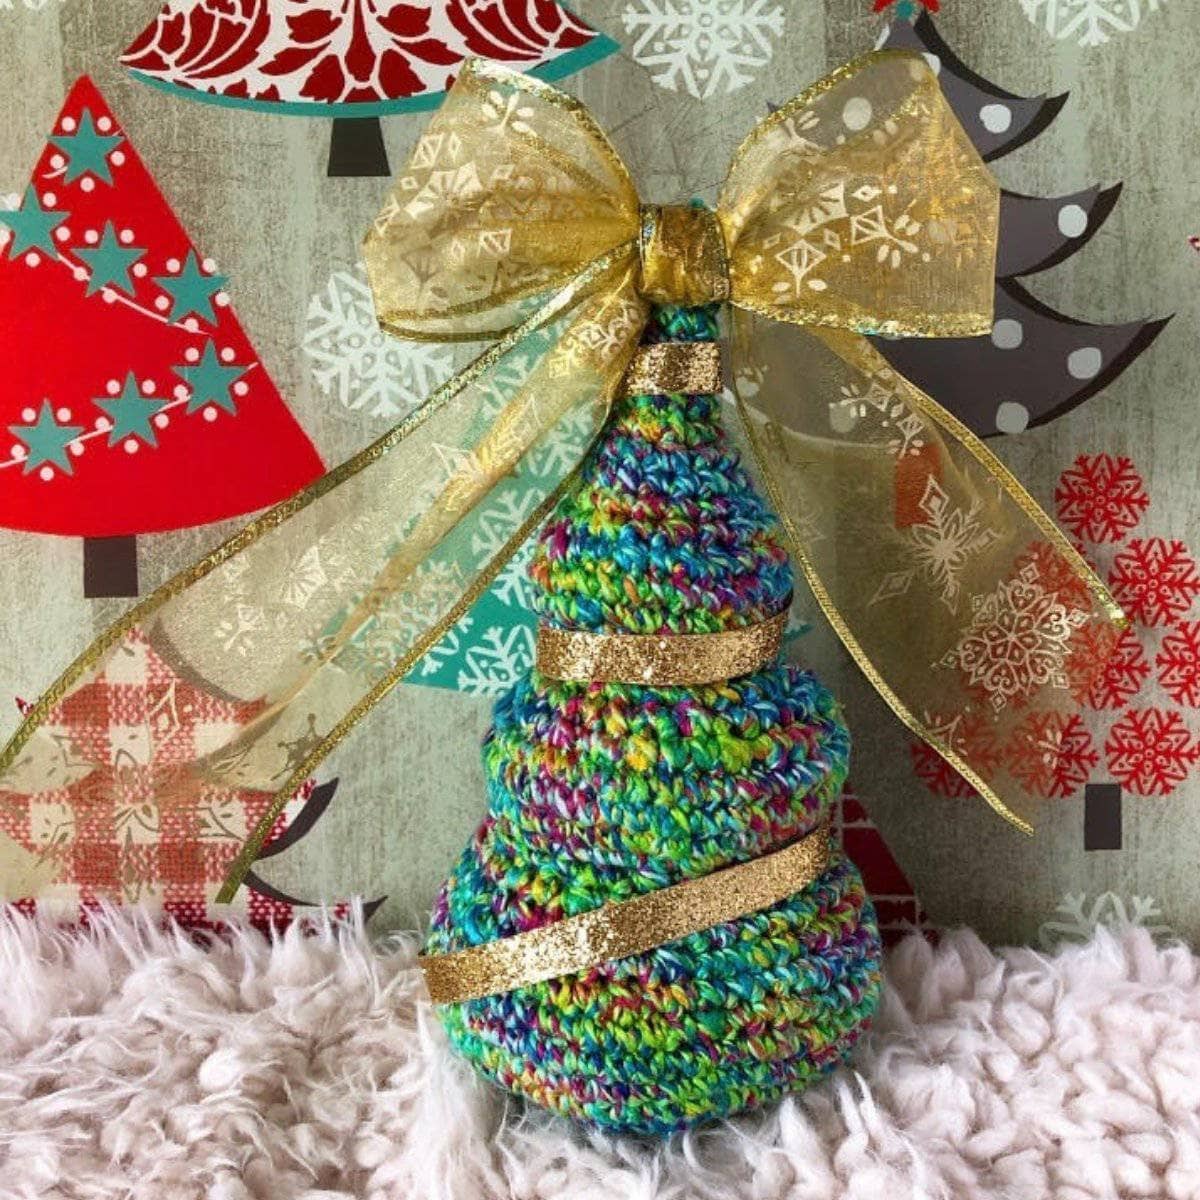 Mixed Up Christmas Trees Crochet Kit 